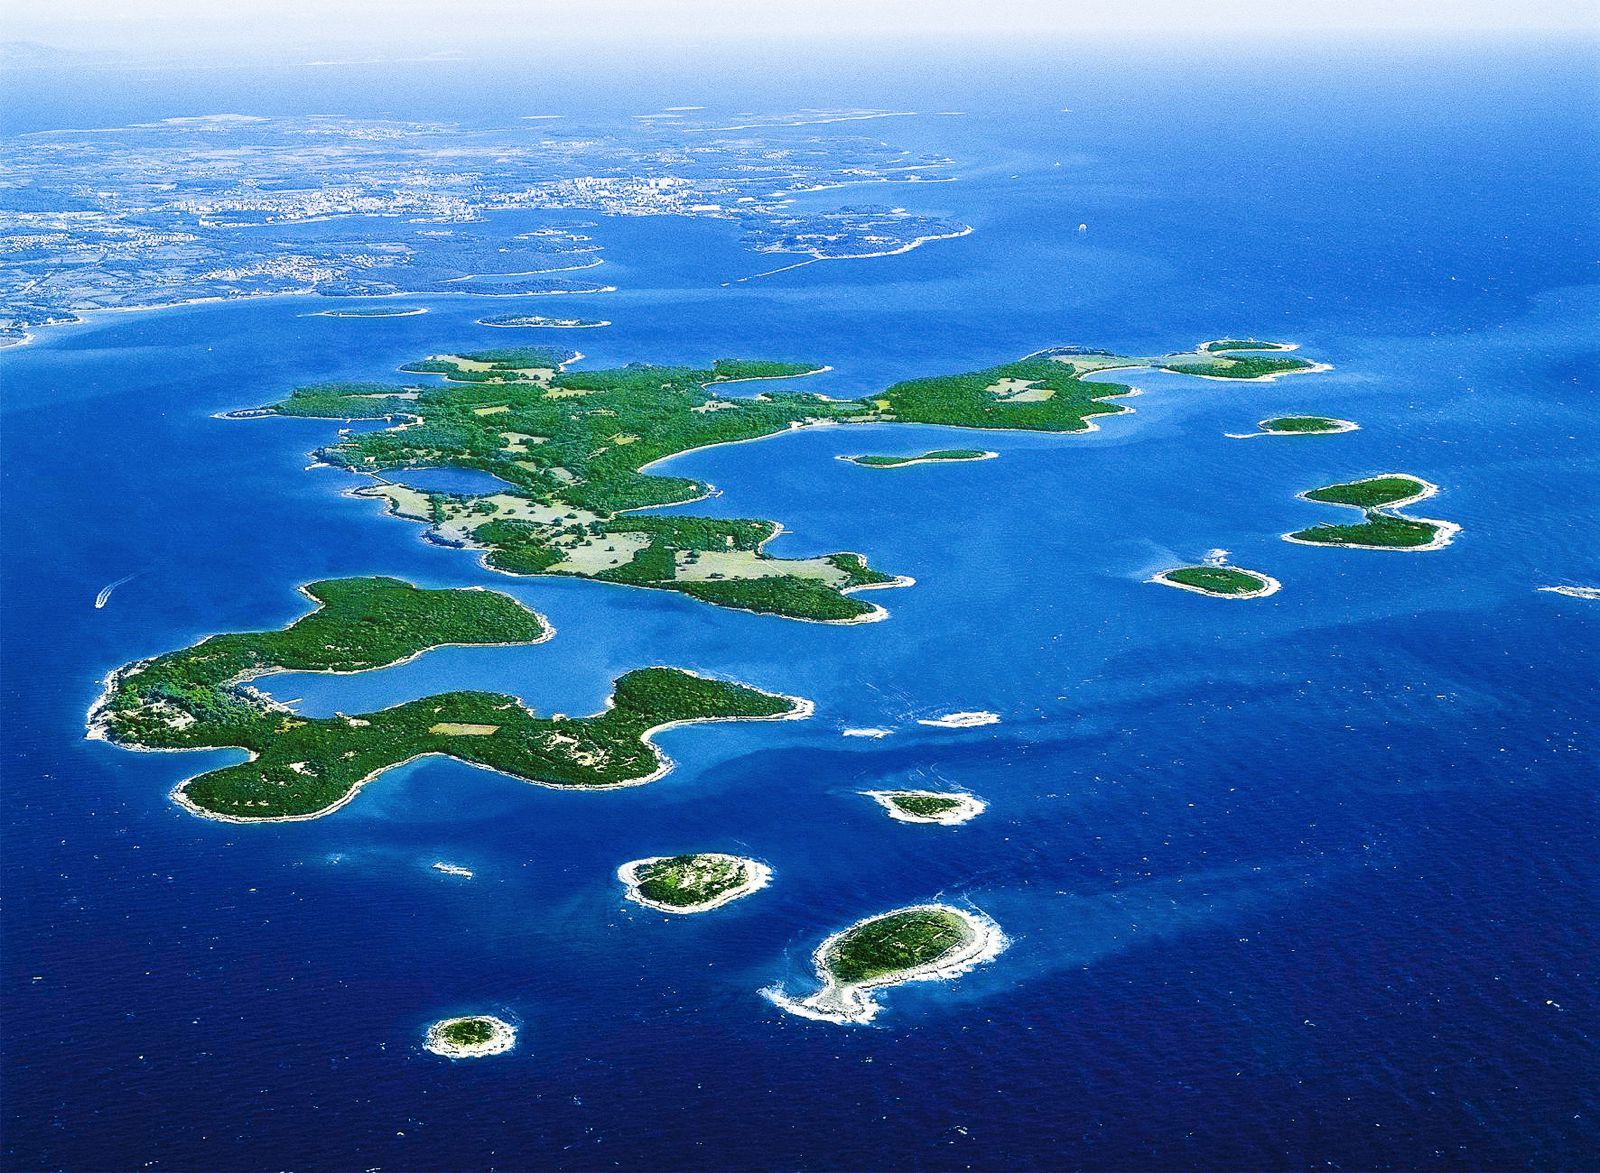 croatia best islands to visit